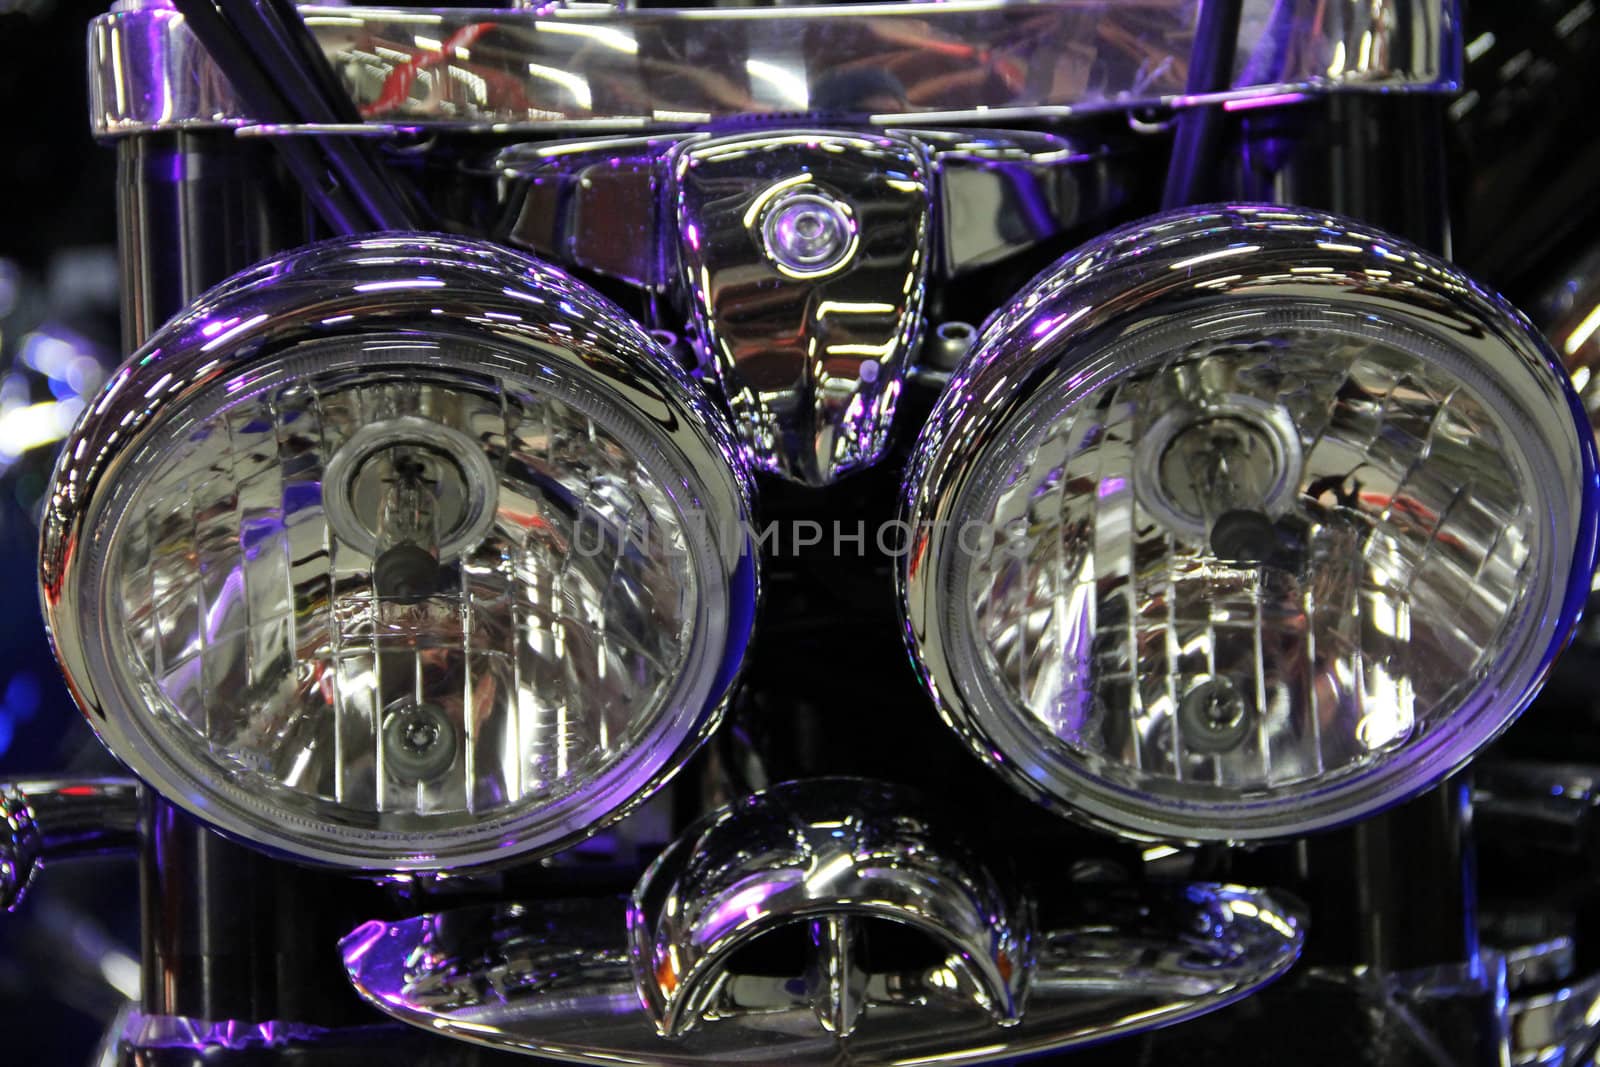 Shiny motorcycle headlight macro close up